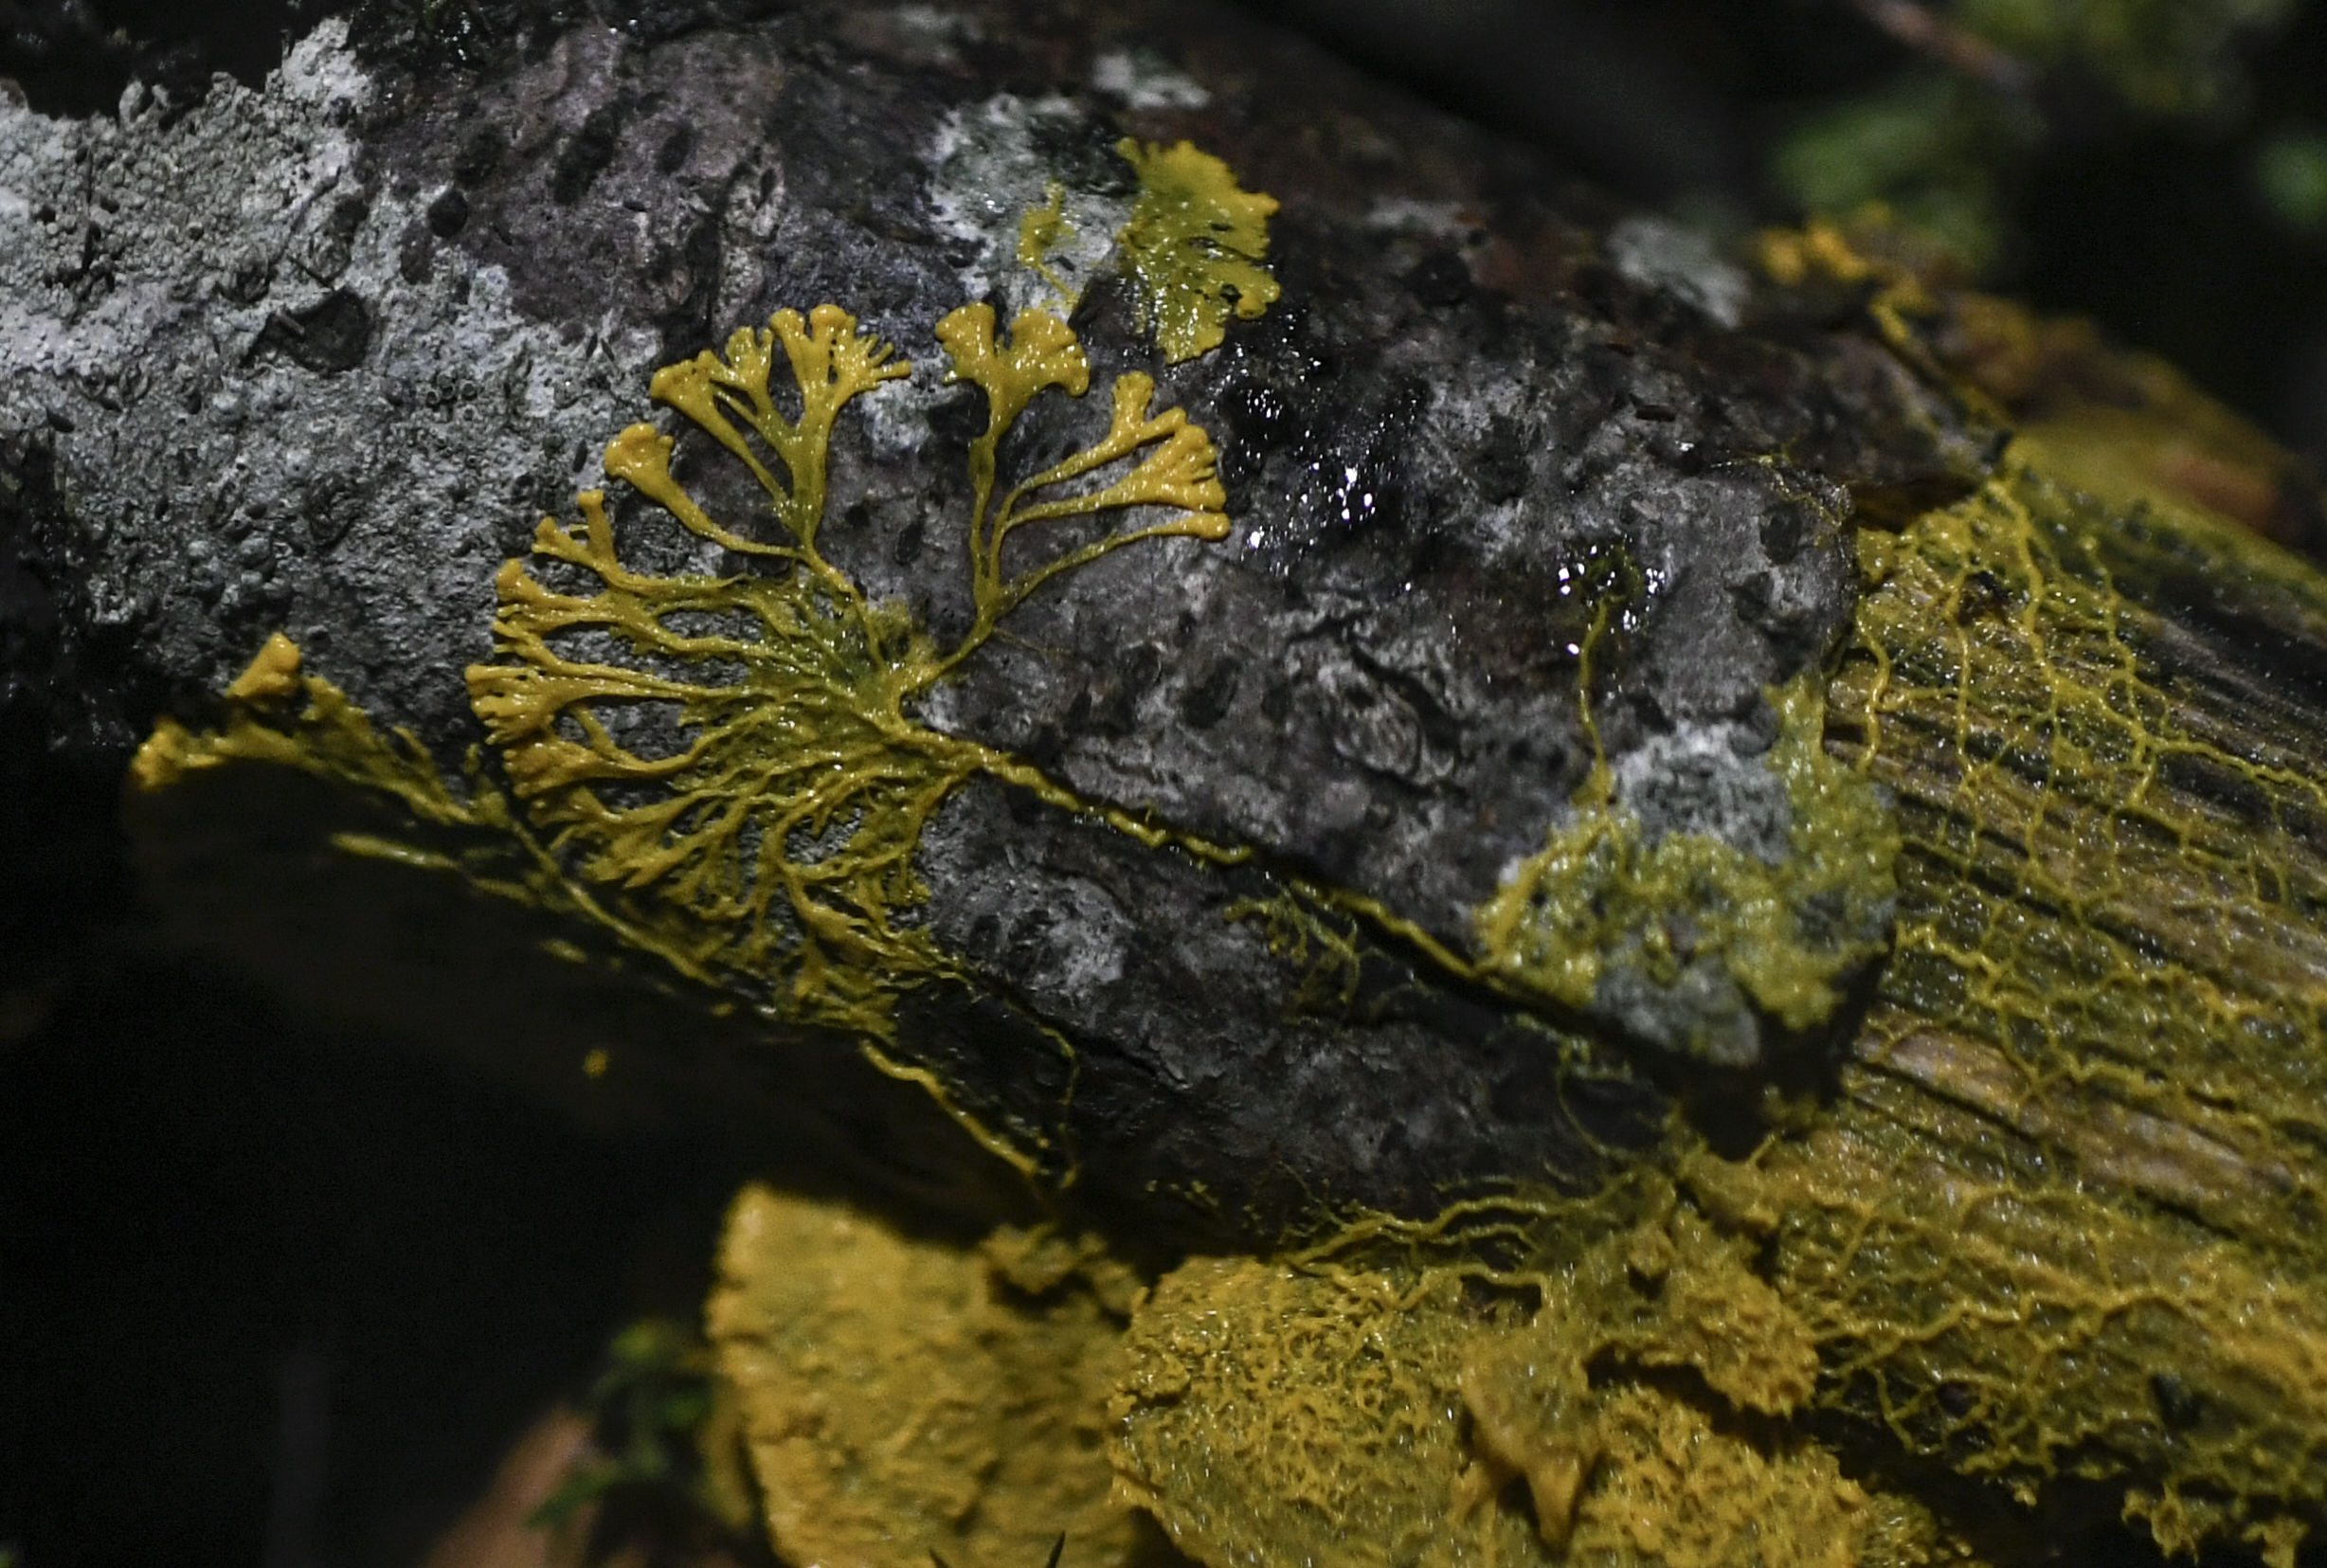 The Blob aka Physarum Polycephalum slime mold